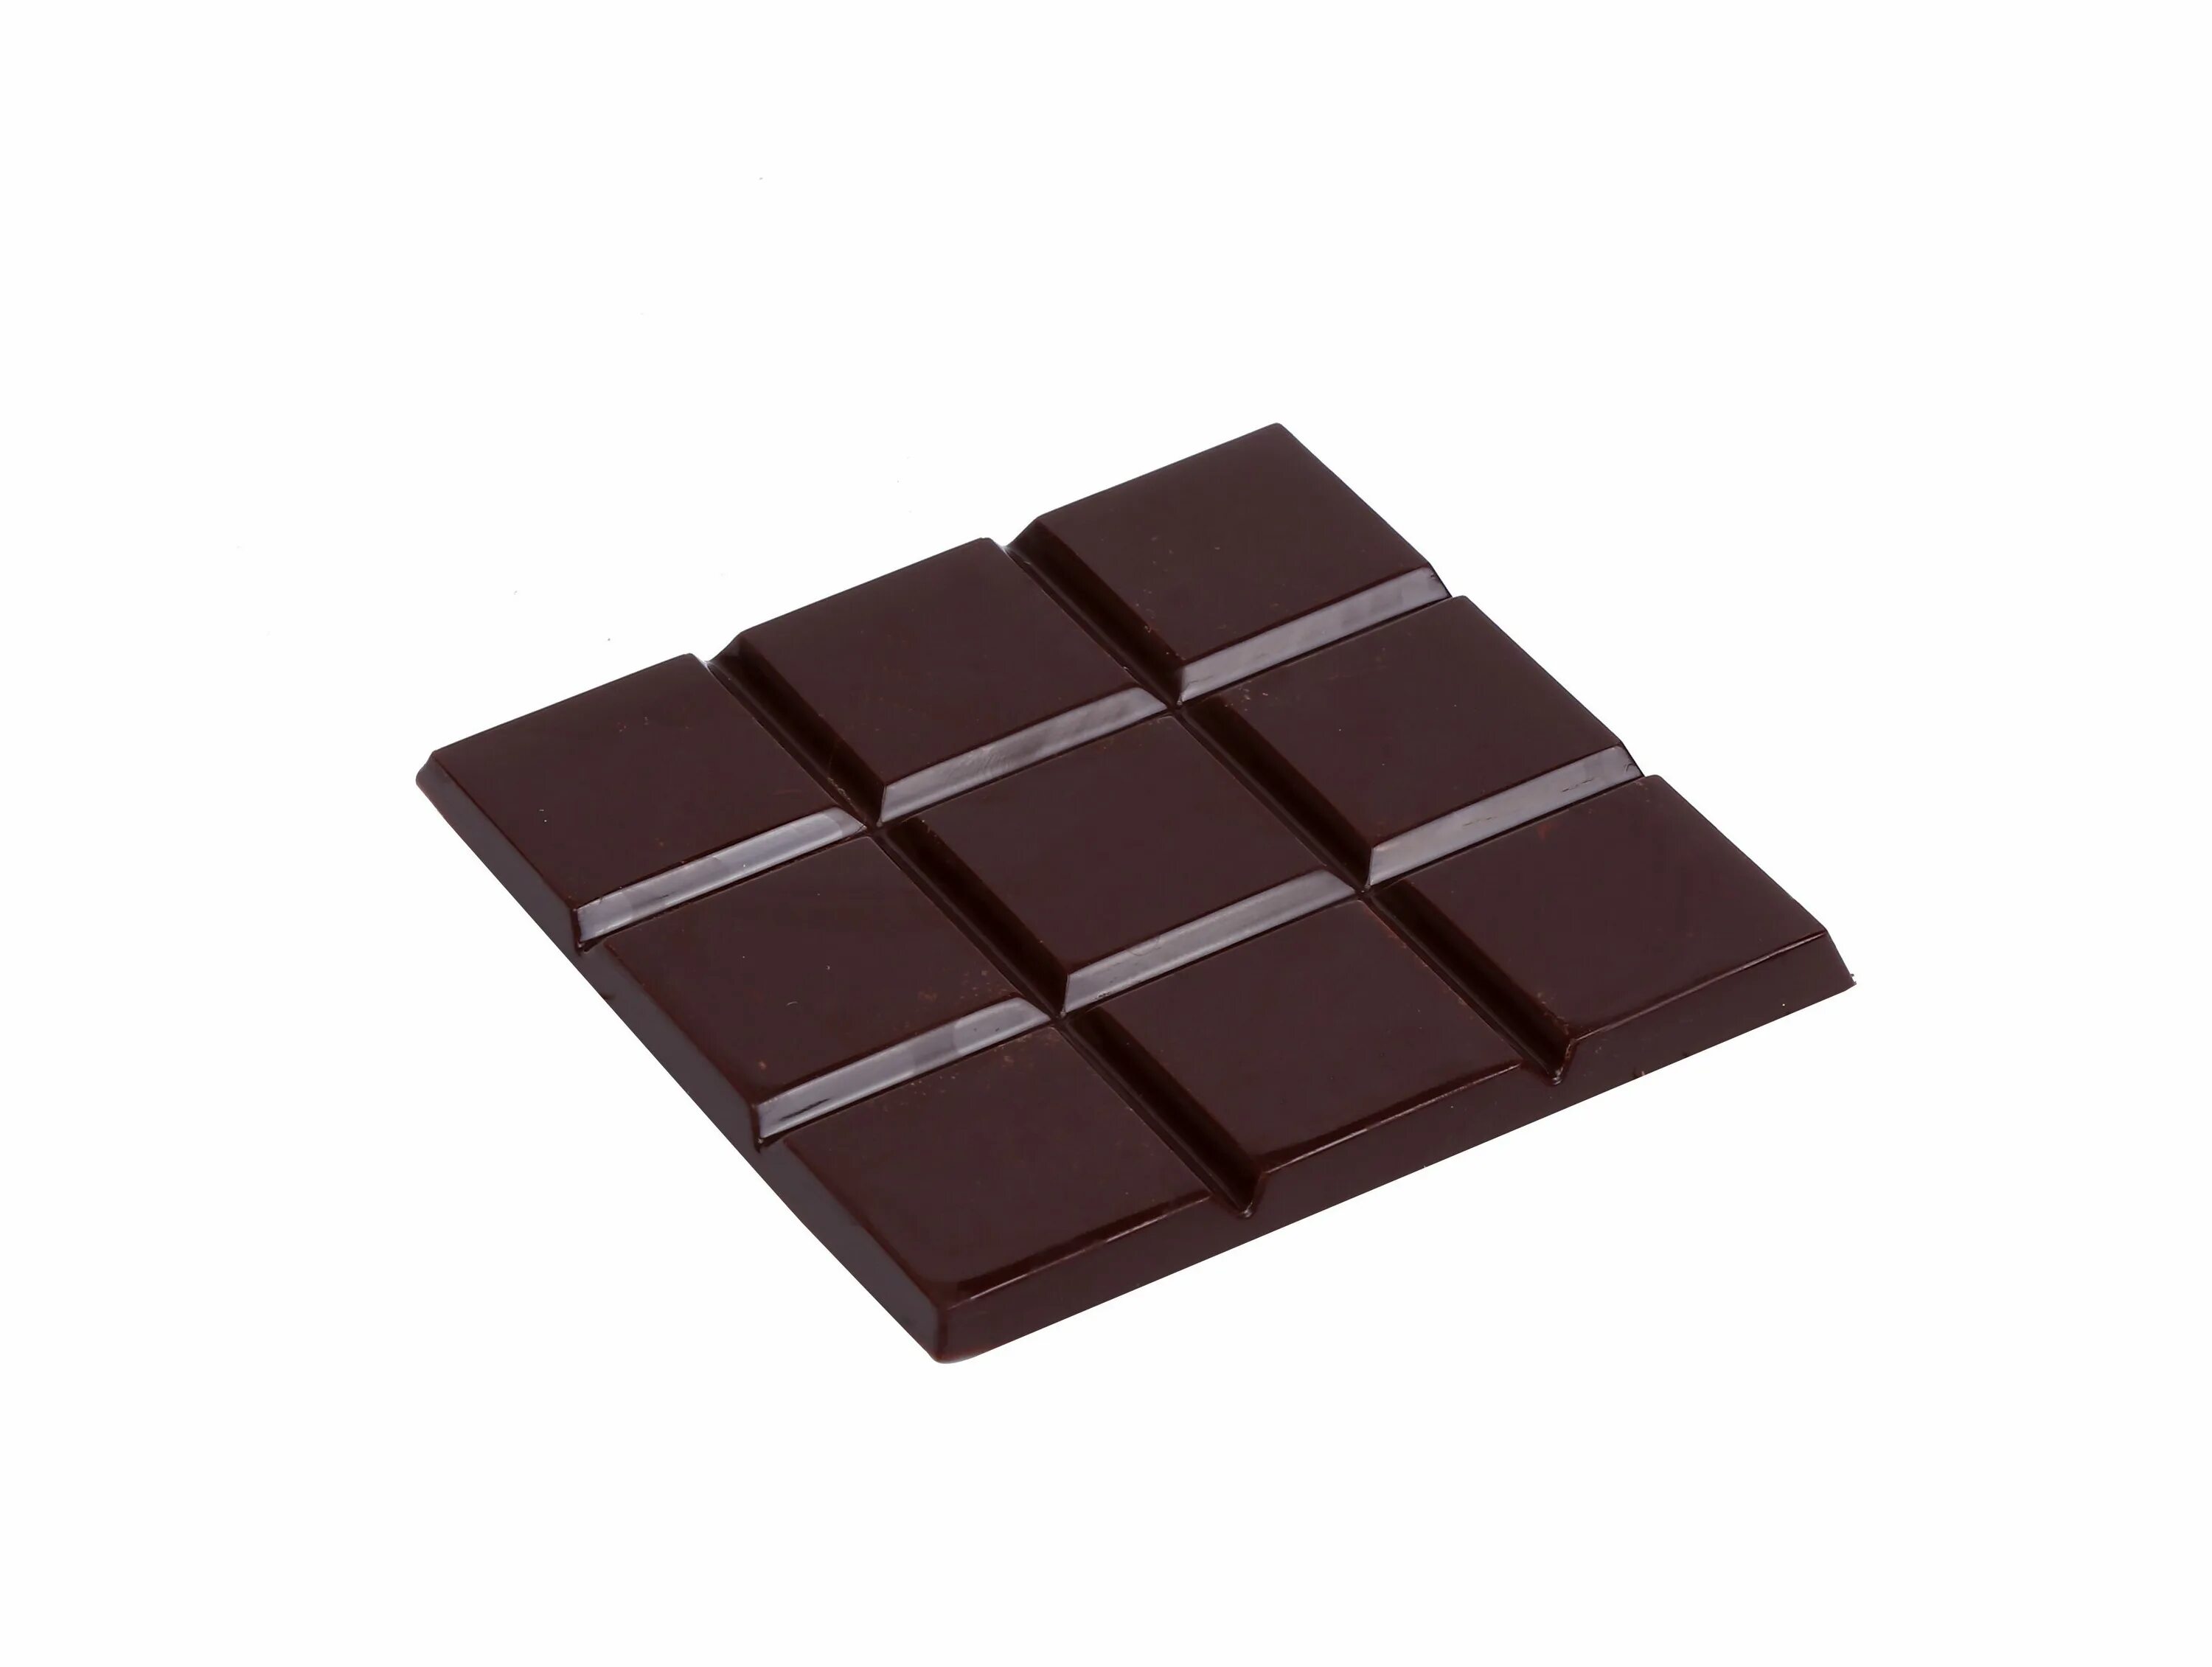 Квадратные шоколадки. Квадратная плитка шоколада. Шоколад плитка квадрат. Плиточный шоколад квадратной формы.